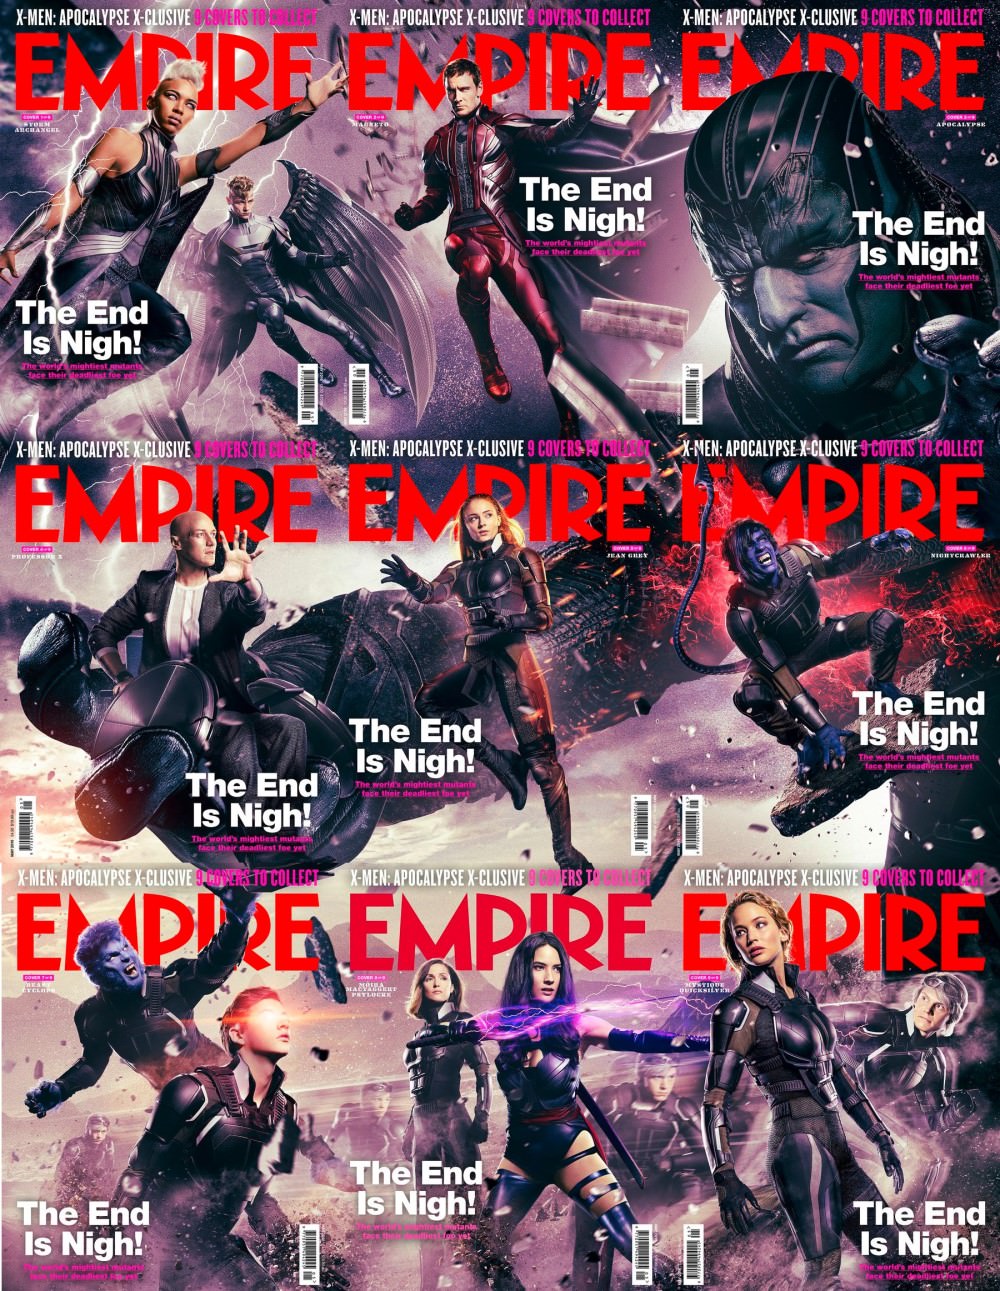 x-men-apocalypse-magazine-covers